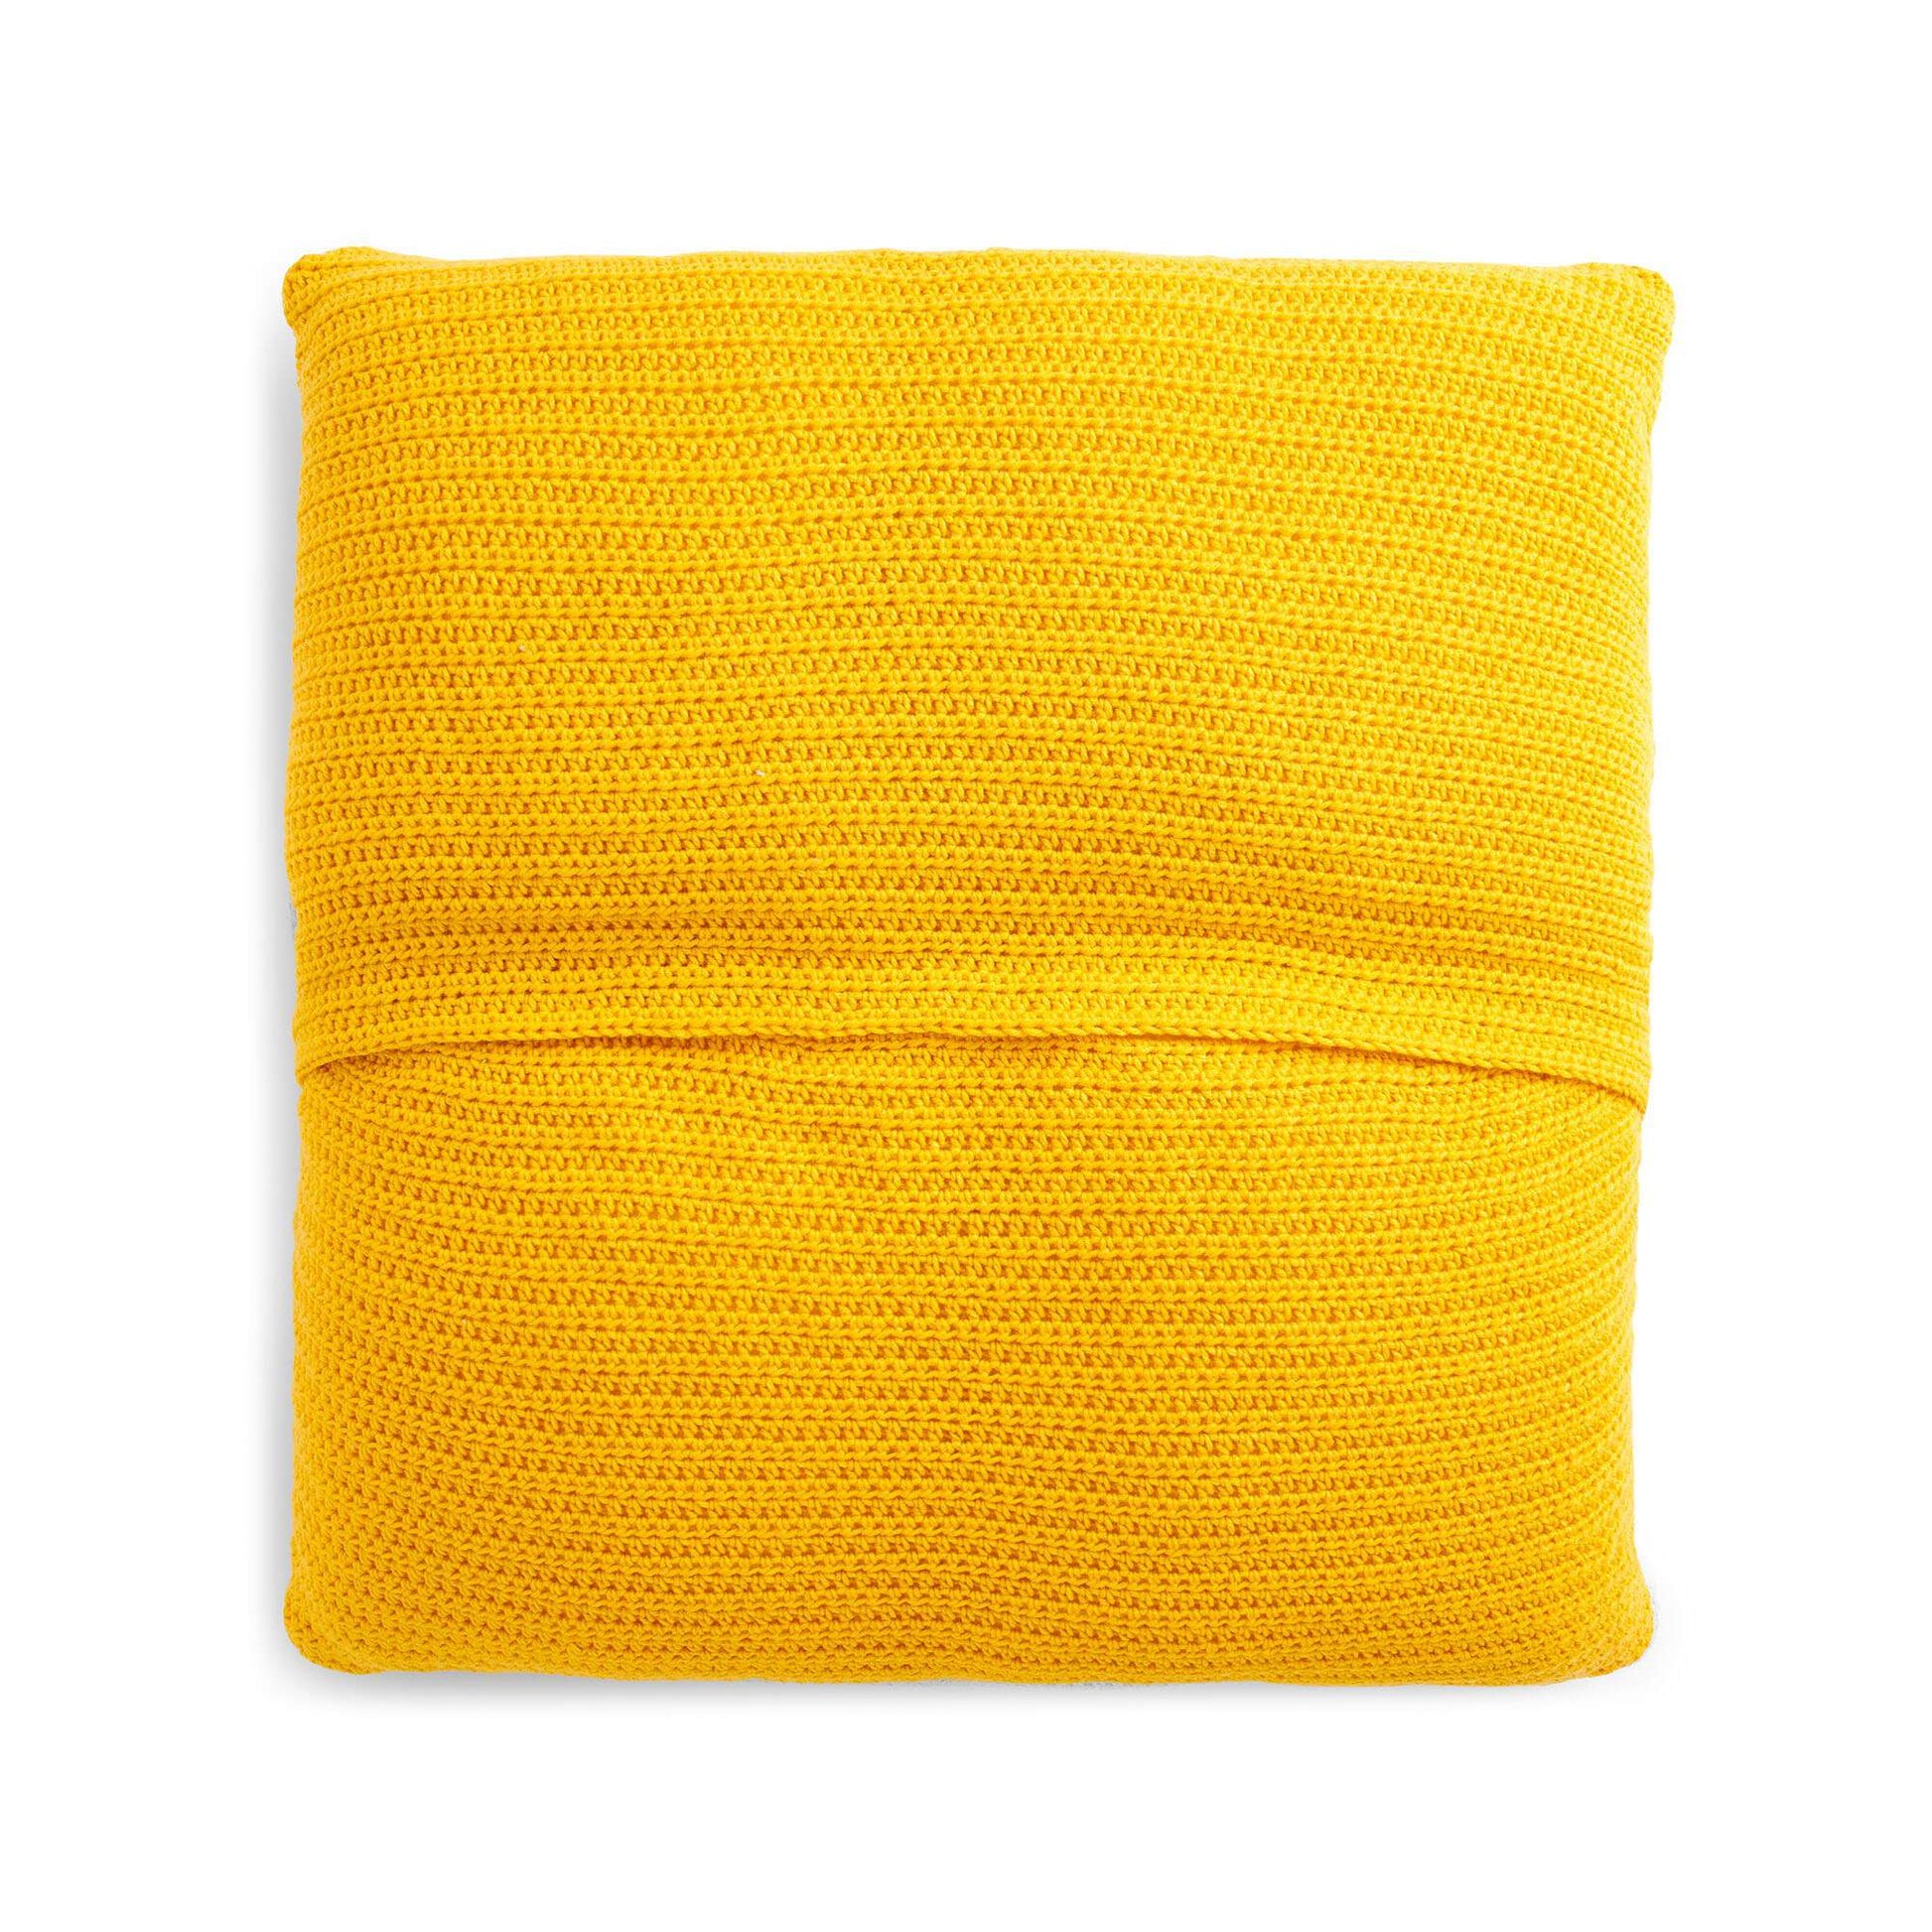 Free Caron Woven Check Crochet Pillow Pattern